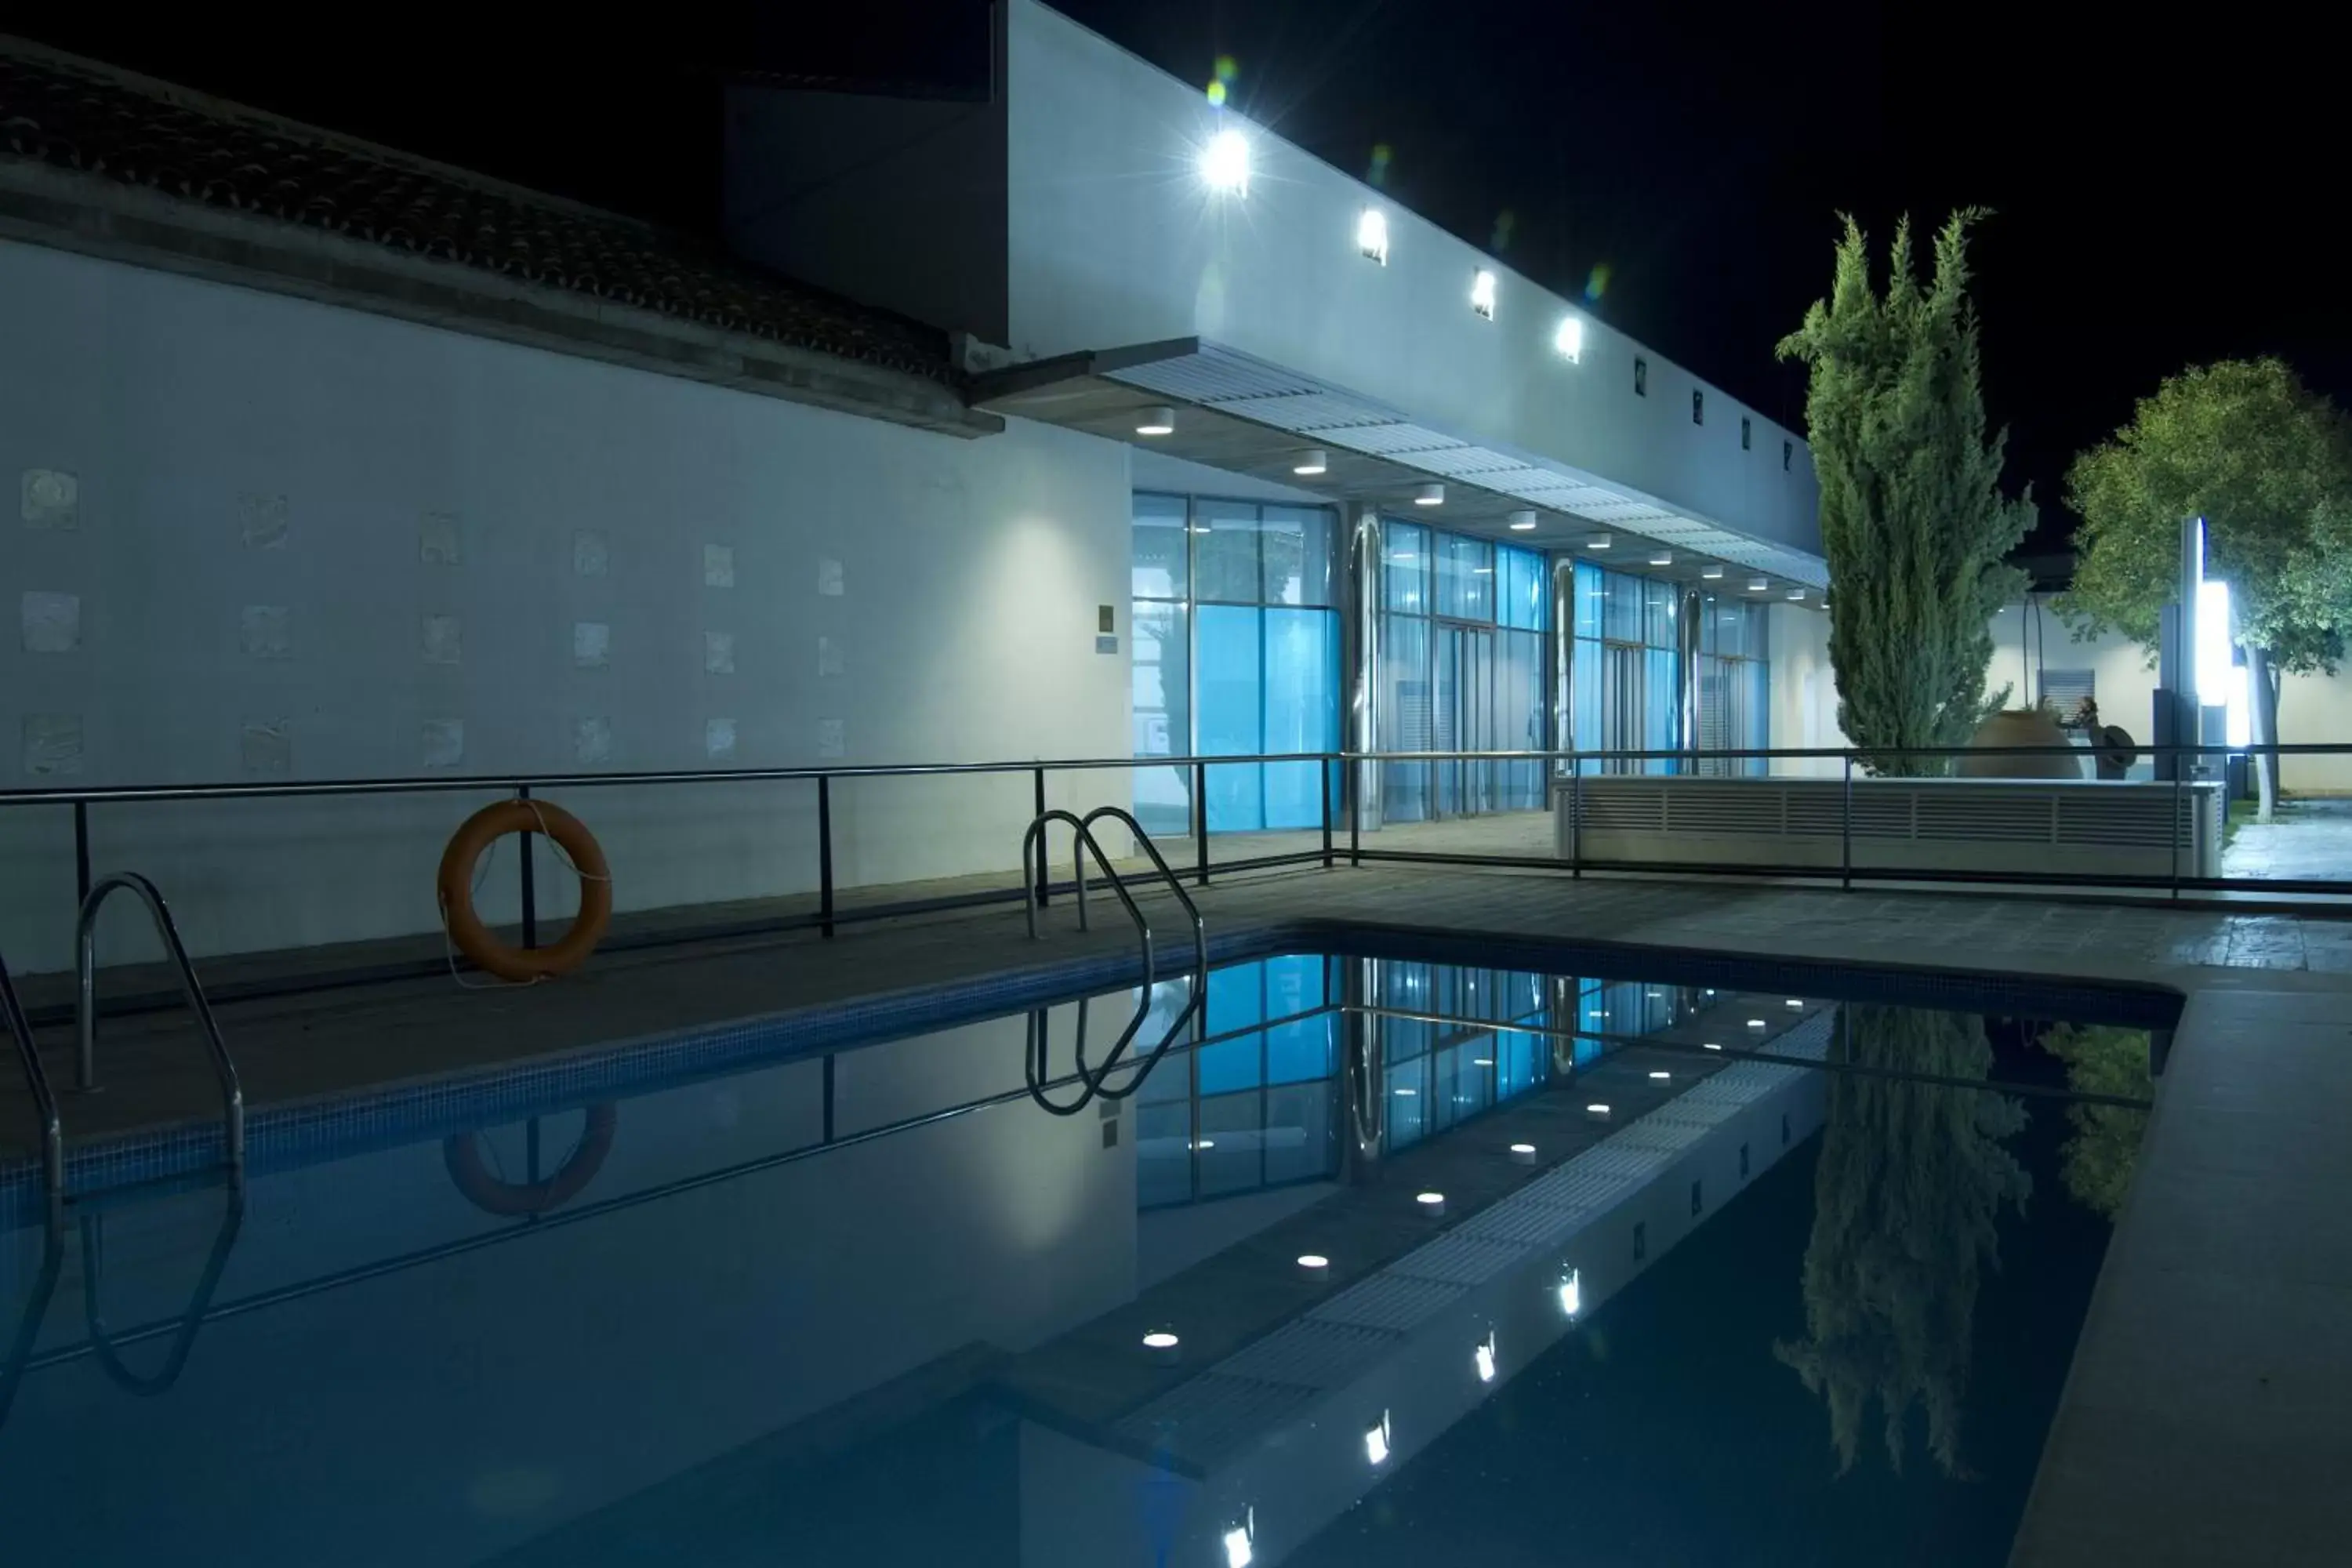 Night, Swimming Pool in Hospedería Mirador de Llerena